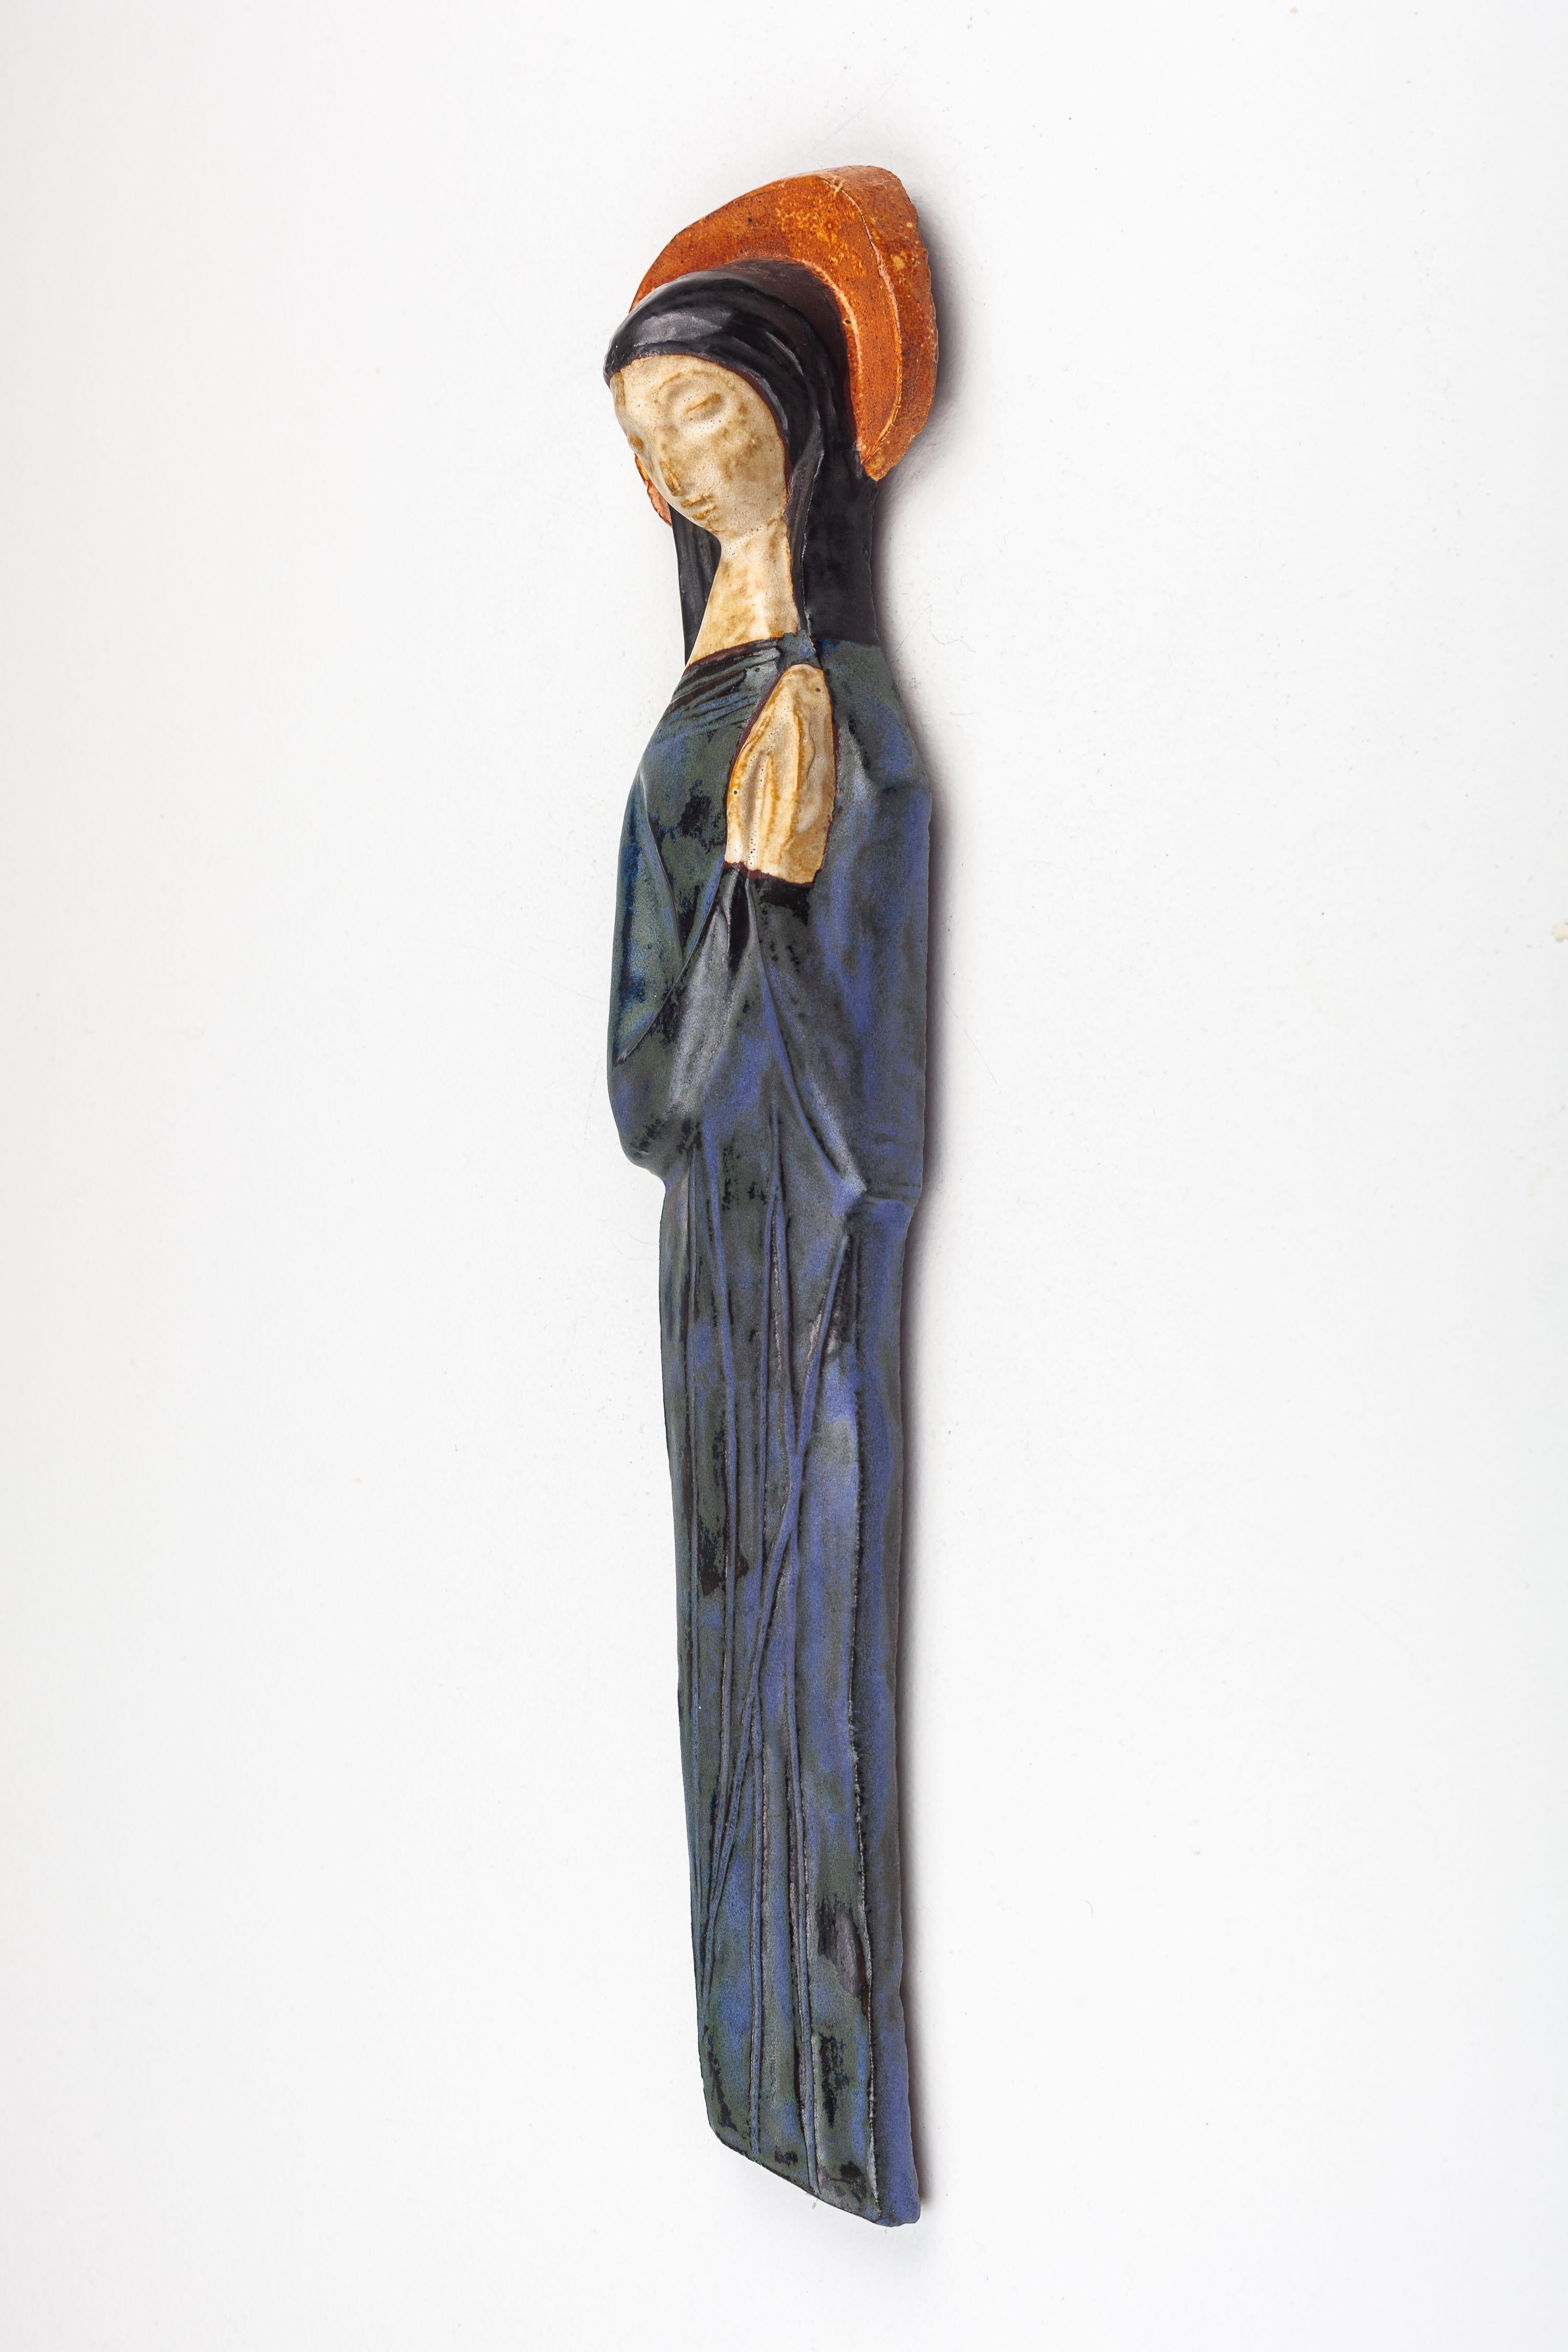 Diese moderne Keramikskulptur aus der Mitte des Jahrhunderts stellt die Jungfrau Maria dar, eine zentrale Figur der christlichen Ikonographie, die von einem europäischen Studio-Keramikkünstler mit einer einzigartigen künstlerischen Interpretation